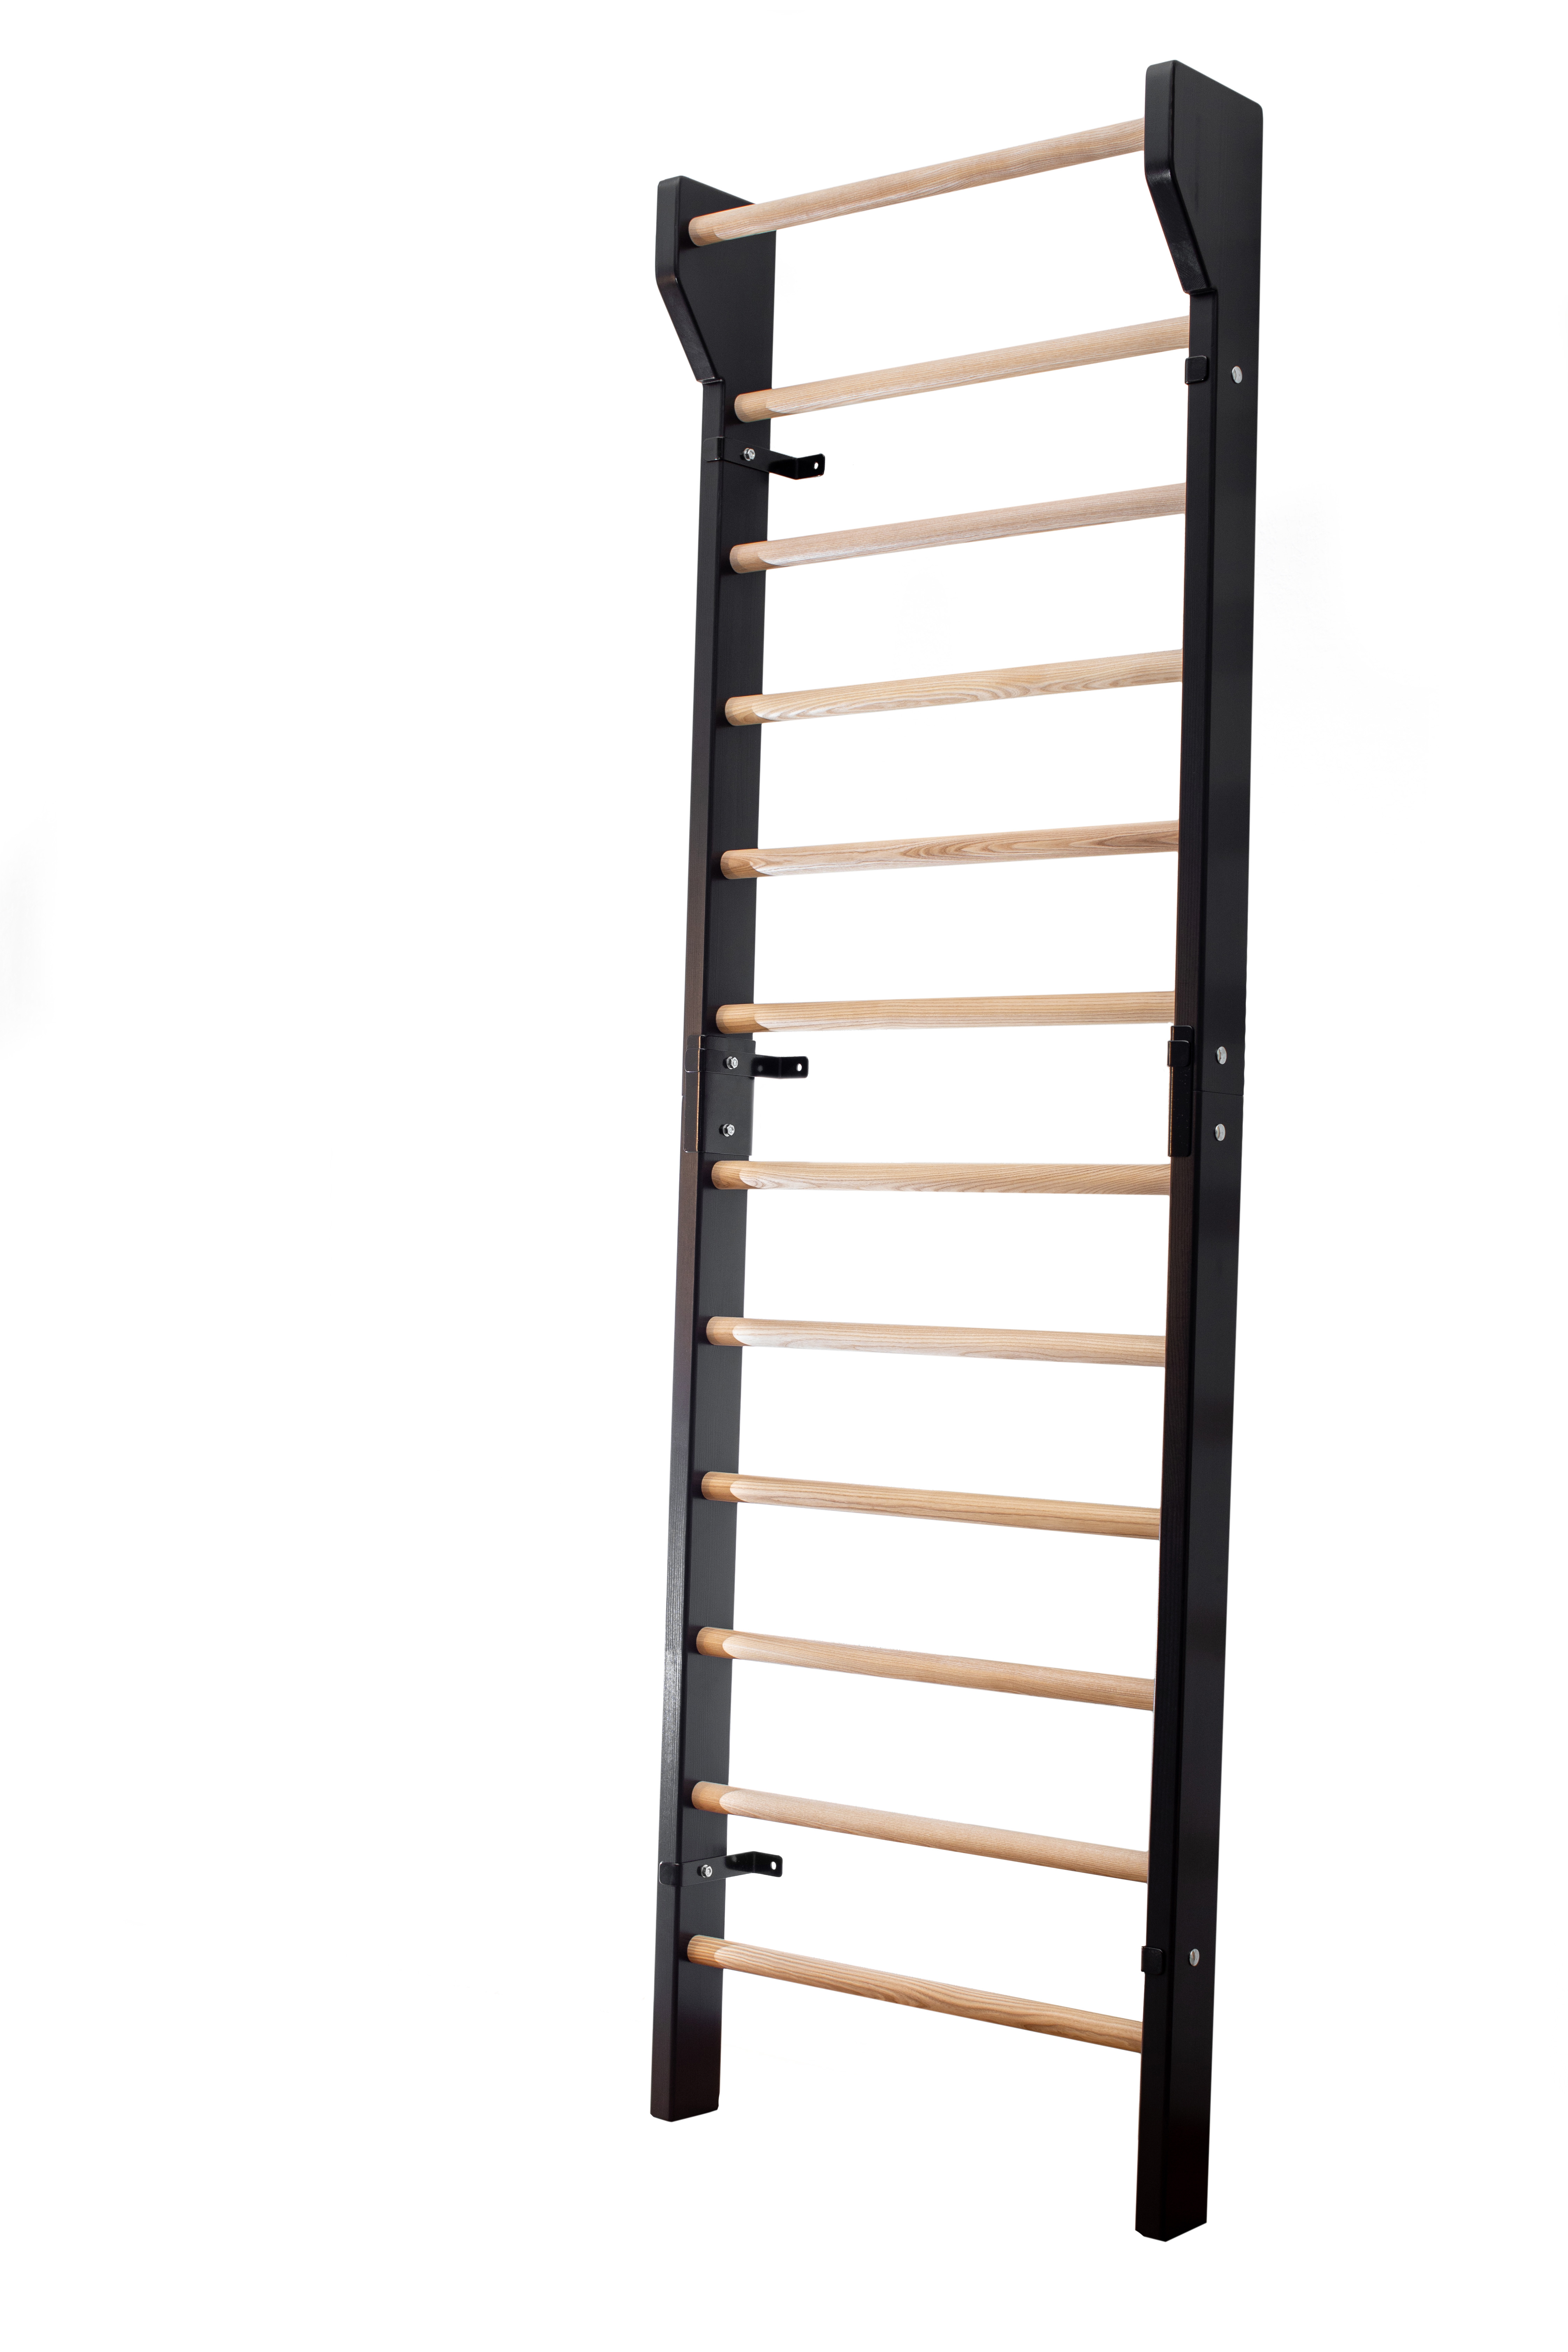 Wall Bars, Swedish Ladder, Gymnastics Ladder, Wood Stall Bar, Gym Fram…